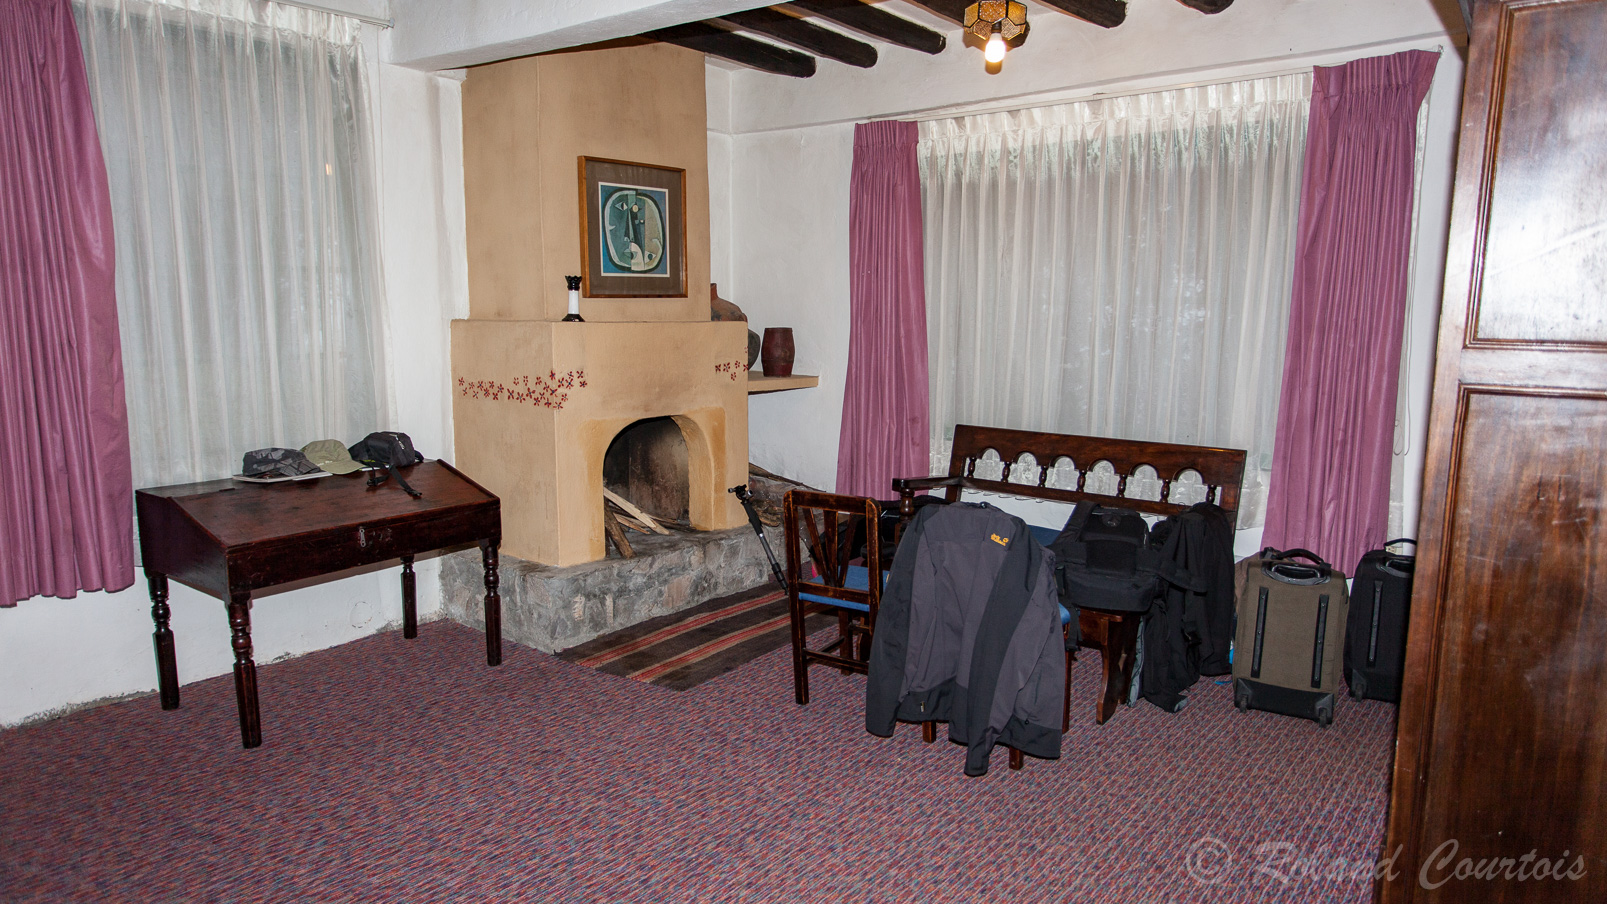 A côté du site d'Ingapirca, l'hôtel dispose de chambres .... glaciales, malgré le feu ouvert ! (impossible à allumer à cause de l'humidité )